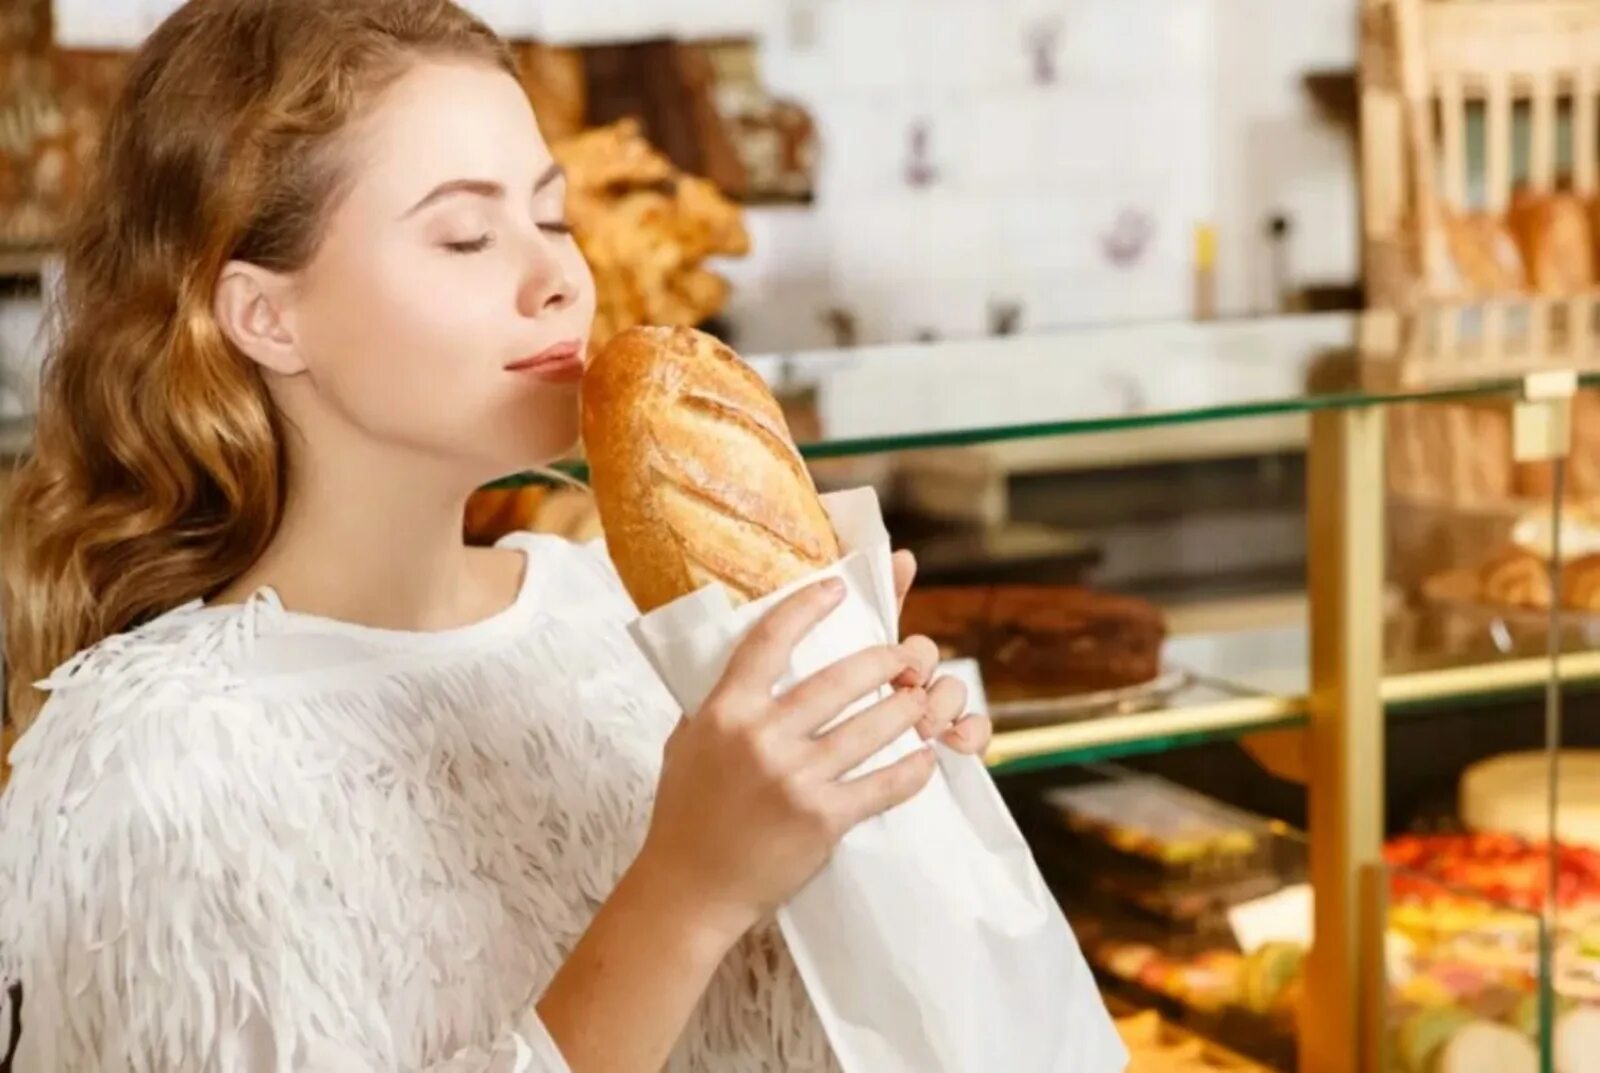 Человек есть много хлеба. Девушка в булочной. Девушка с выпечкой. Запах свежей выпечки. Девушка ест выпечку.